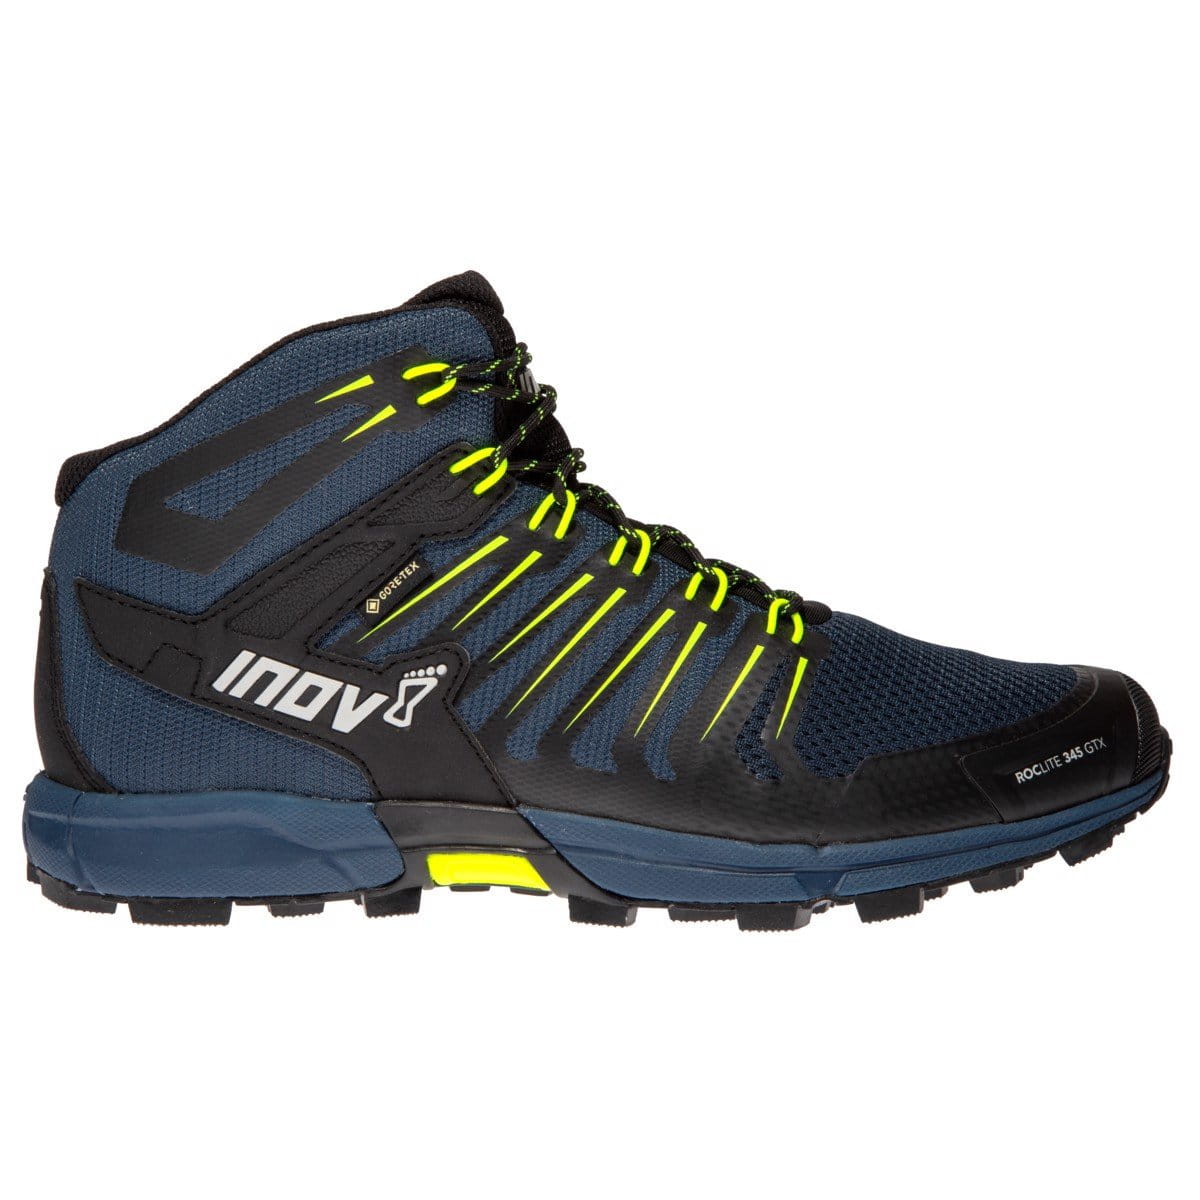 Bežecké topánky Inov-8  ROCLITE 345 GTX M (M) navy/yellow modrá/žlutá